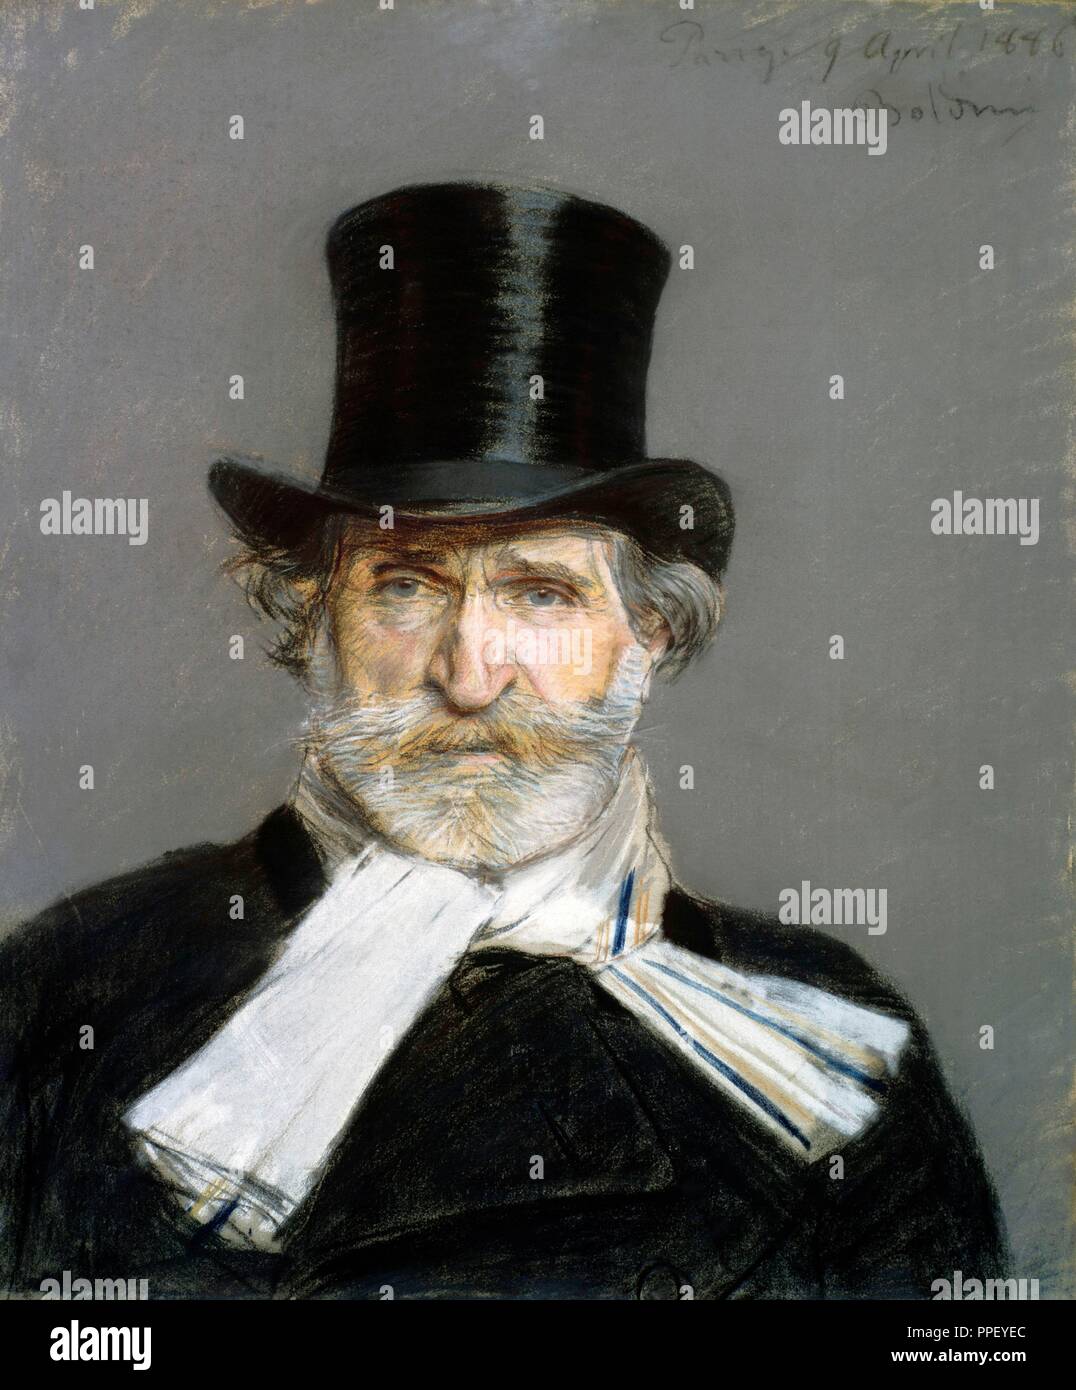 Giuseppe Verdi (1813-1901) Retrato de Giovanni Baldini. Author: BOLDINI, GIOVANNI. Giovanni Boldini. Stock Photo